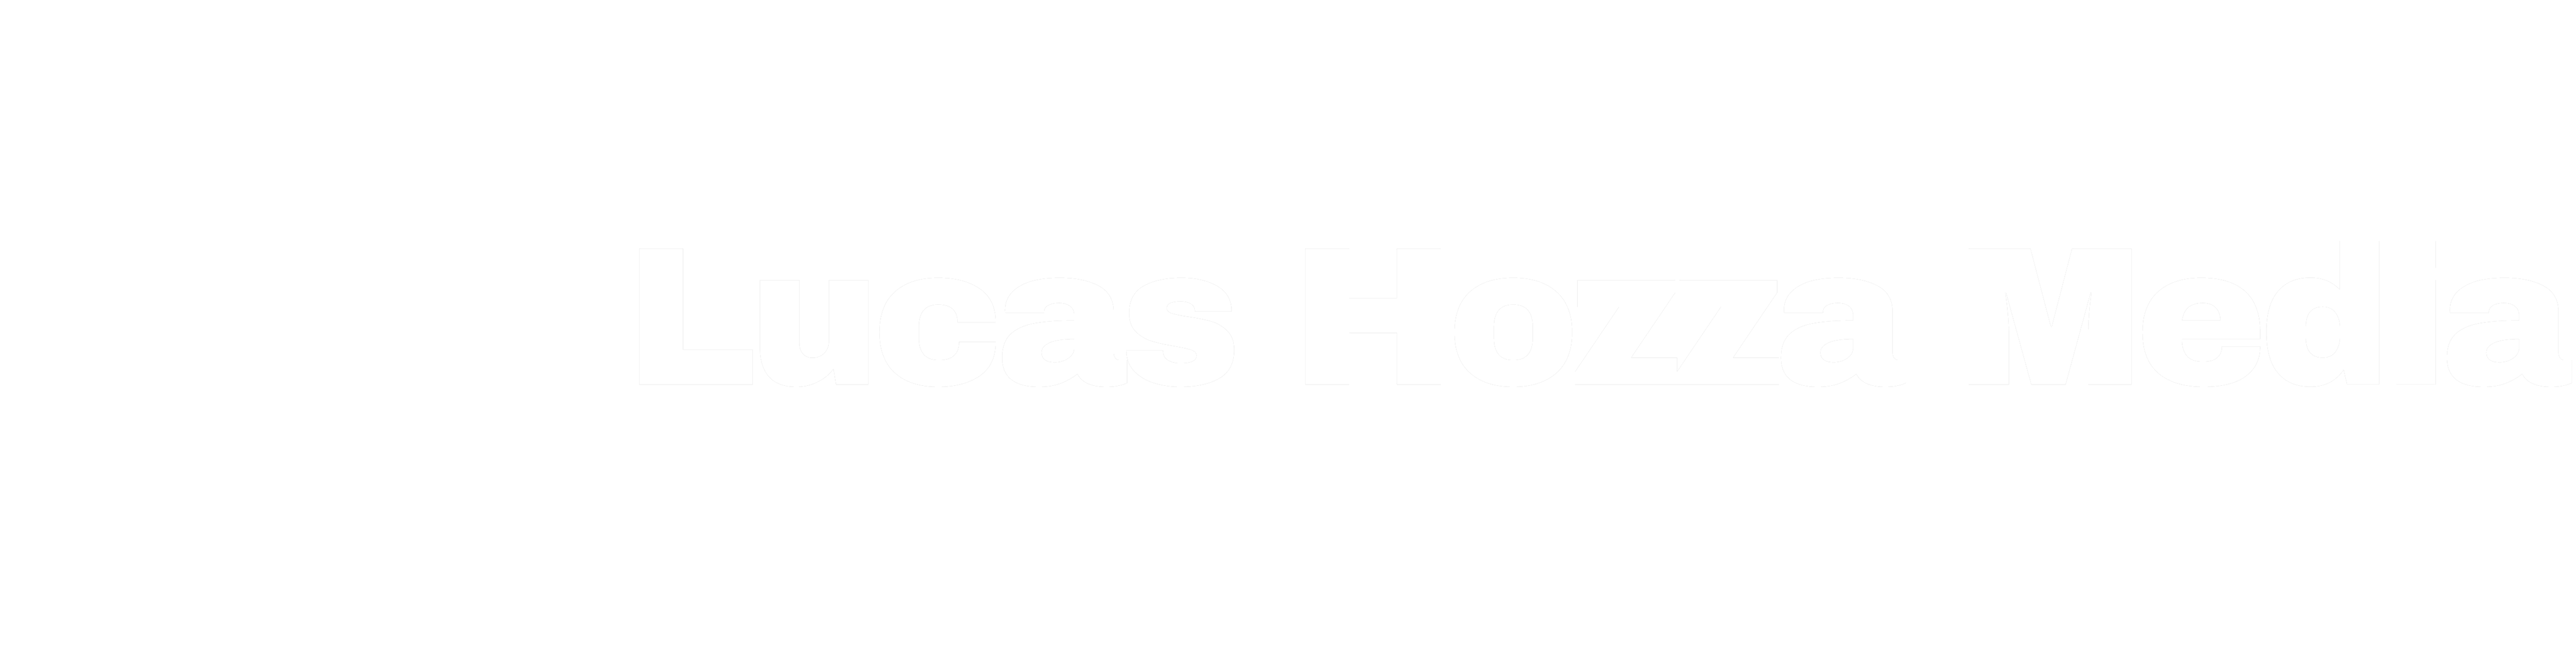 Lucas Hozza